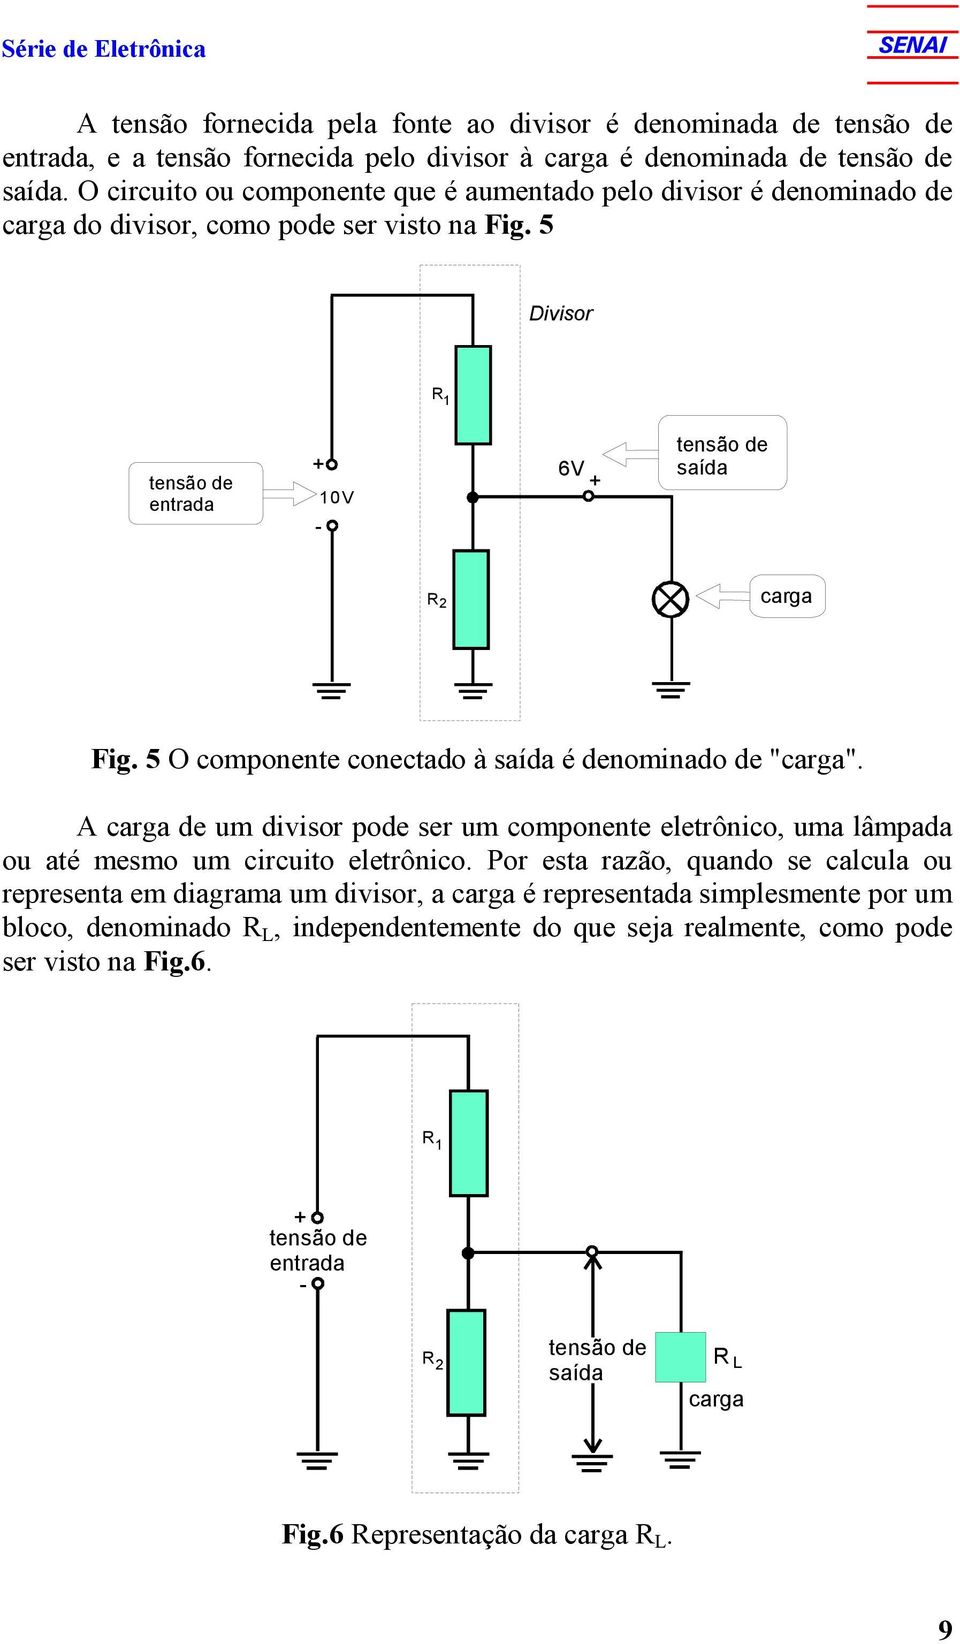 5 O componente conectado à saída é denominado de "carga". A carga de um divisor pode ser um componente eletrônico, uma lâmpada ou até mesmo um circuito eletrônico.